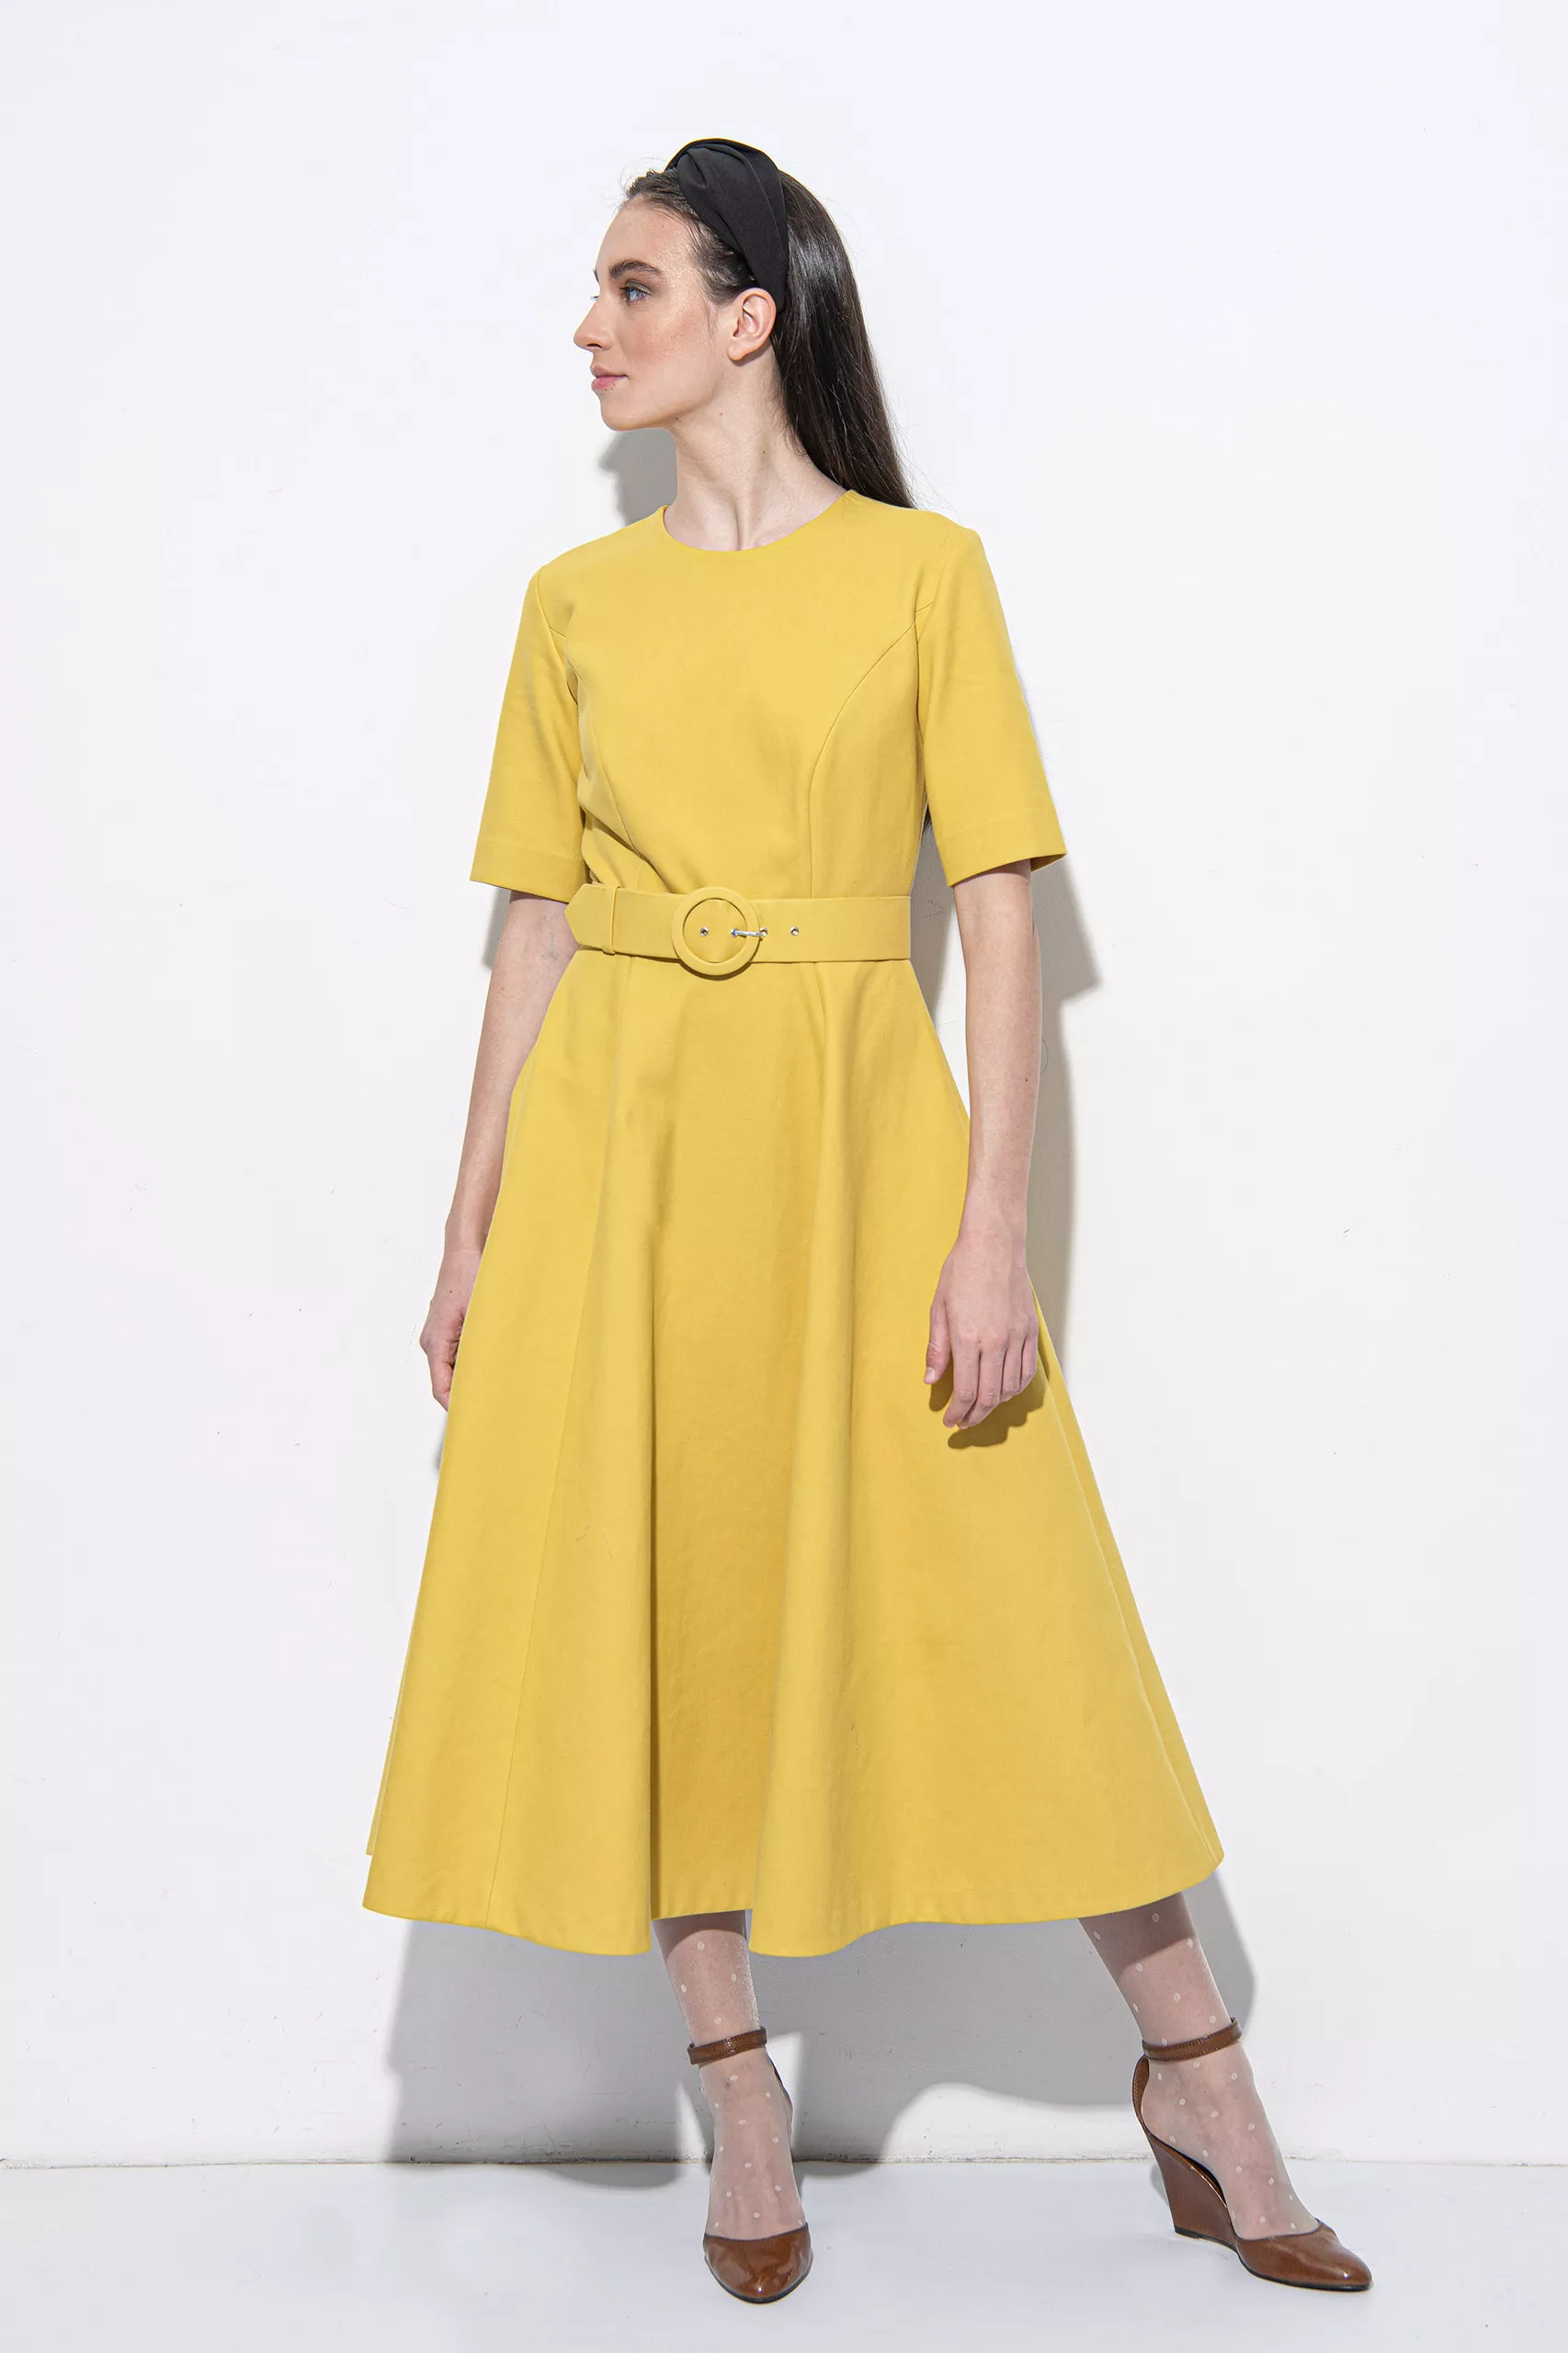 Mustard yellow dress with a belt uai • Sassa Björg